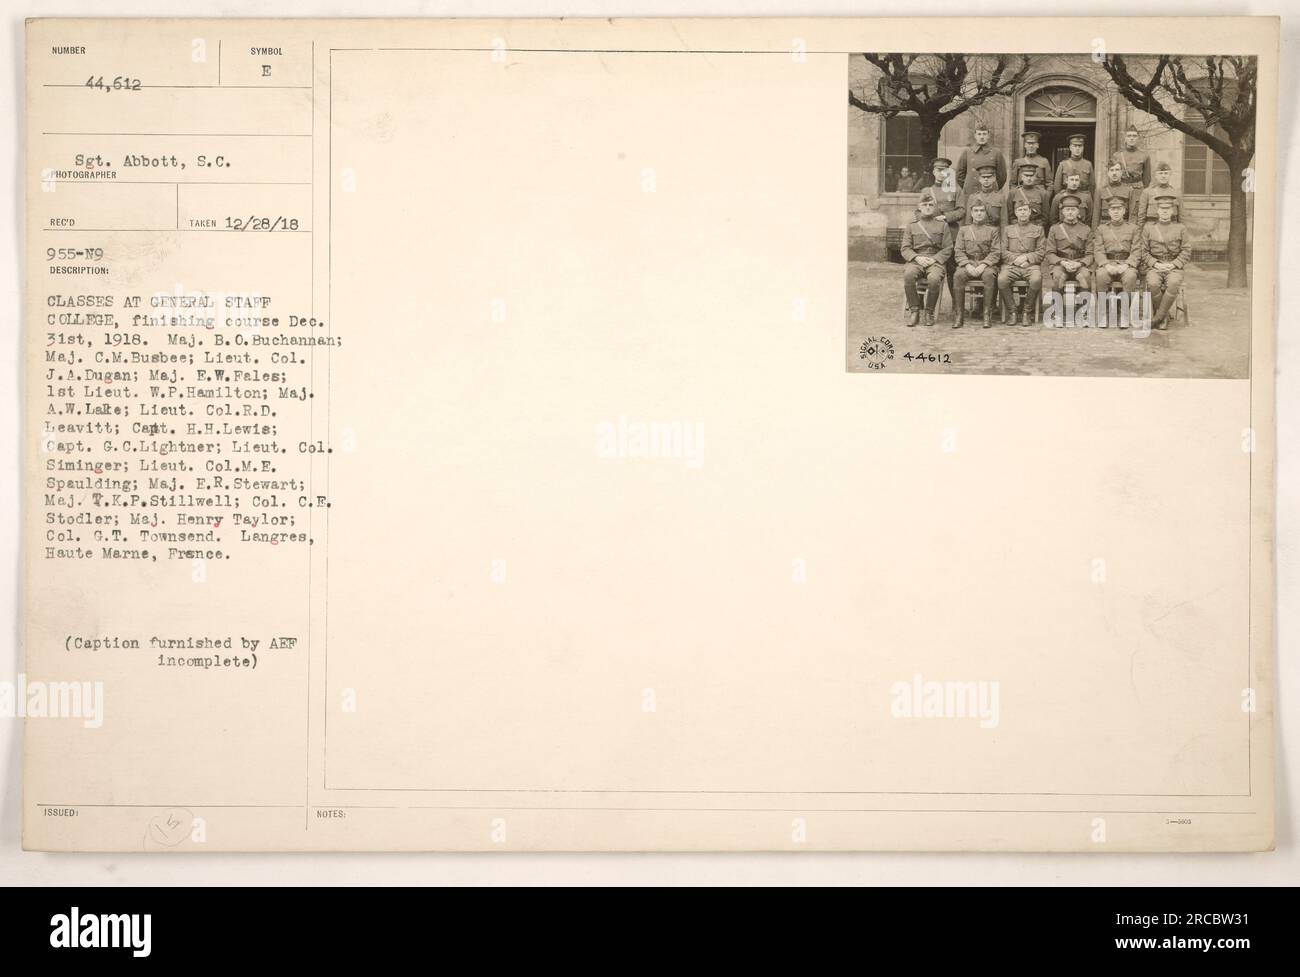 Eine Gruppe von Offizieren, die Kurse am General Staff College in Langres, Haute Marne, Frankreich besuchen. Sie beenden ihren Kurs am 31. Dezember 1918. Die Namen der Offiziere sind wie folgt aufgeführt: Major B.O. Buchannan, Major C.M. Busbee, Lieut. Oberst J.A. Dugan, Major E.W. Fales, 1. Lieut. W.P. Hamilton, Major A.W. Lakte, Lieut. Oberst R.D. Leavitt, Hauptmann H.H. Lewis, Kapitän G.C. Lightner, Lieut. Oberst Siminger, Lieut. Oberst M.E. Spaulding, Major Notaufnahme Stewart, Major T.K.P. Stillwell, Oberst C.E. Stodler, Major Henry Taylor, Oberst G.T. Townsend. (Bildunterschrift von AEF unvollständig) Stockfoto